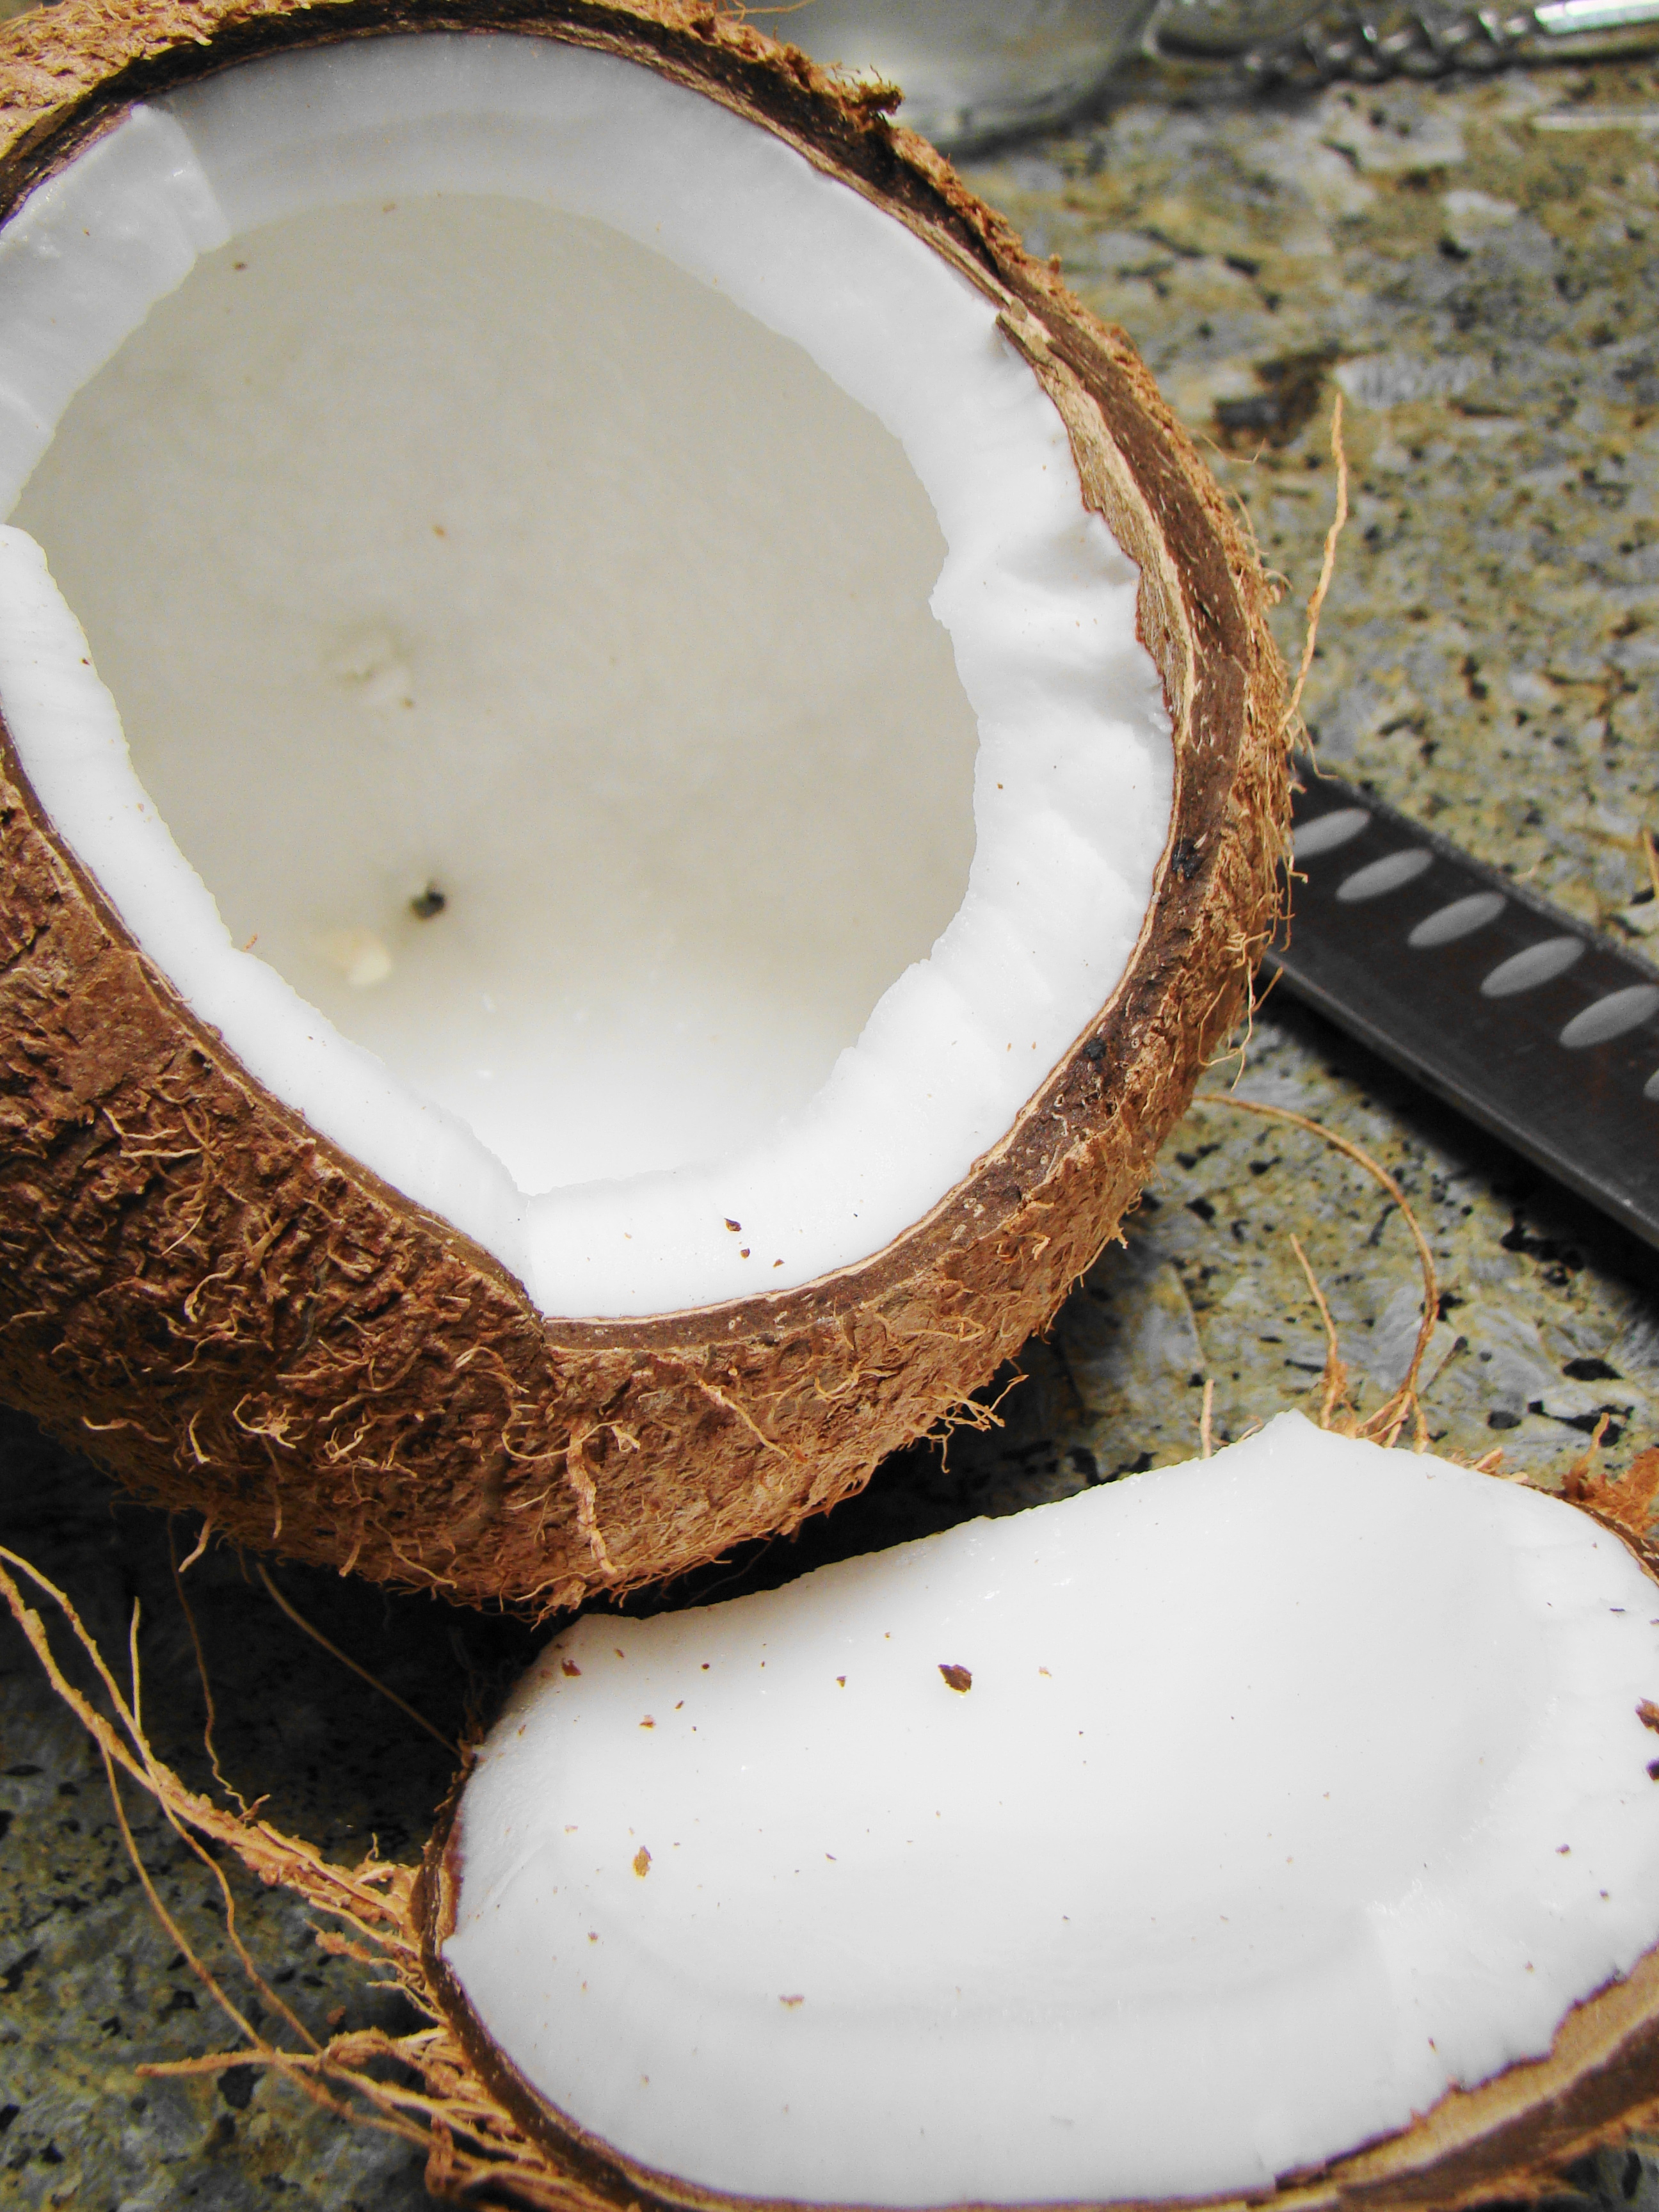 Настоящие кокосовые пальмы — одни из самых капризных